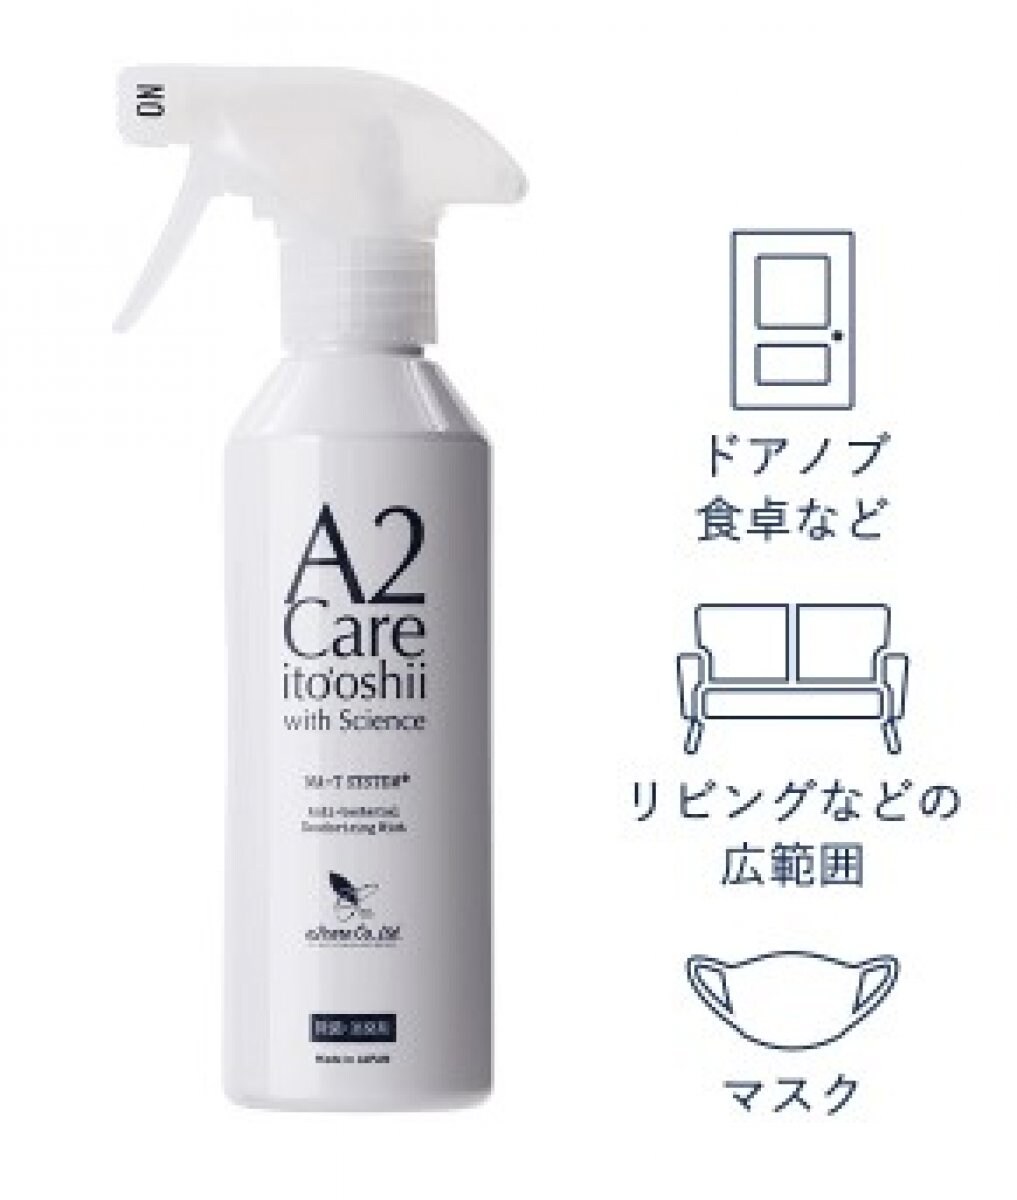 除菌消臭剤A2Care (スプレー300mL_MA-T配合) 日本製 アルコールフリー 無香料 無臭 低刺激